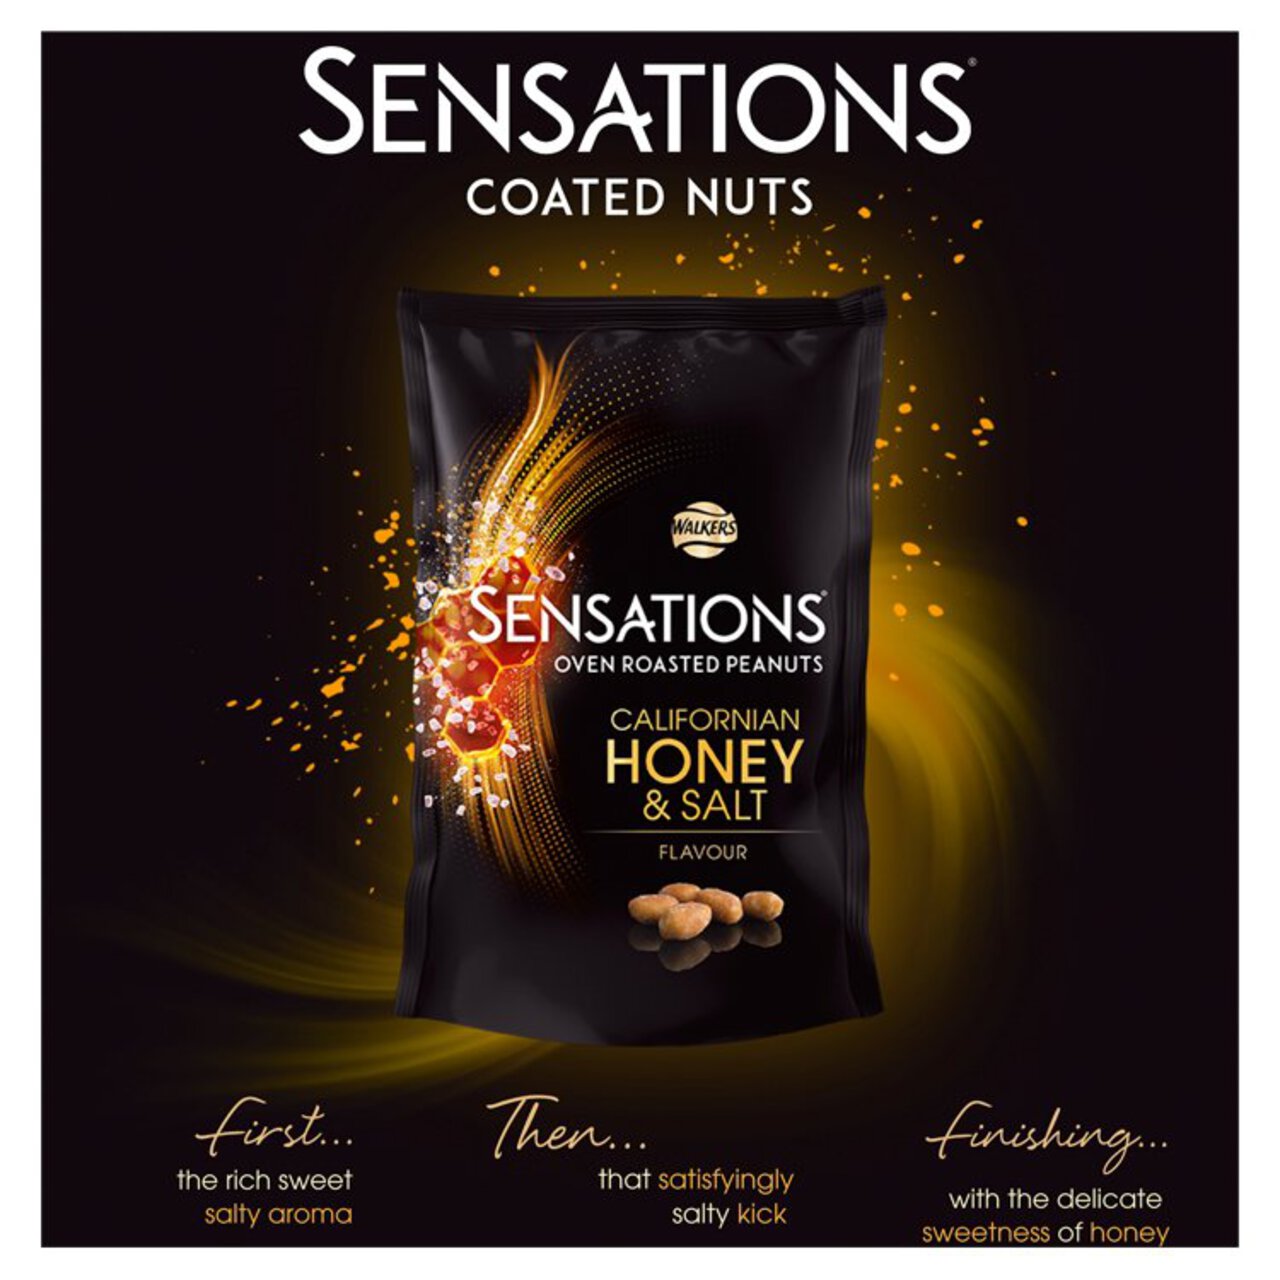 Sensations Californian Honey & Salt Roasted Sharing Peanuts 145g